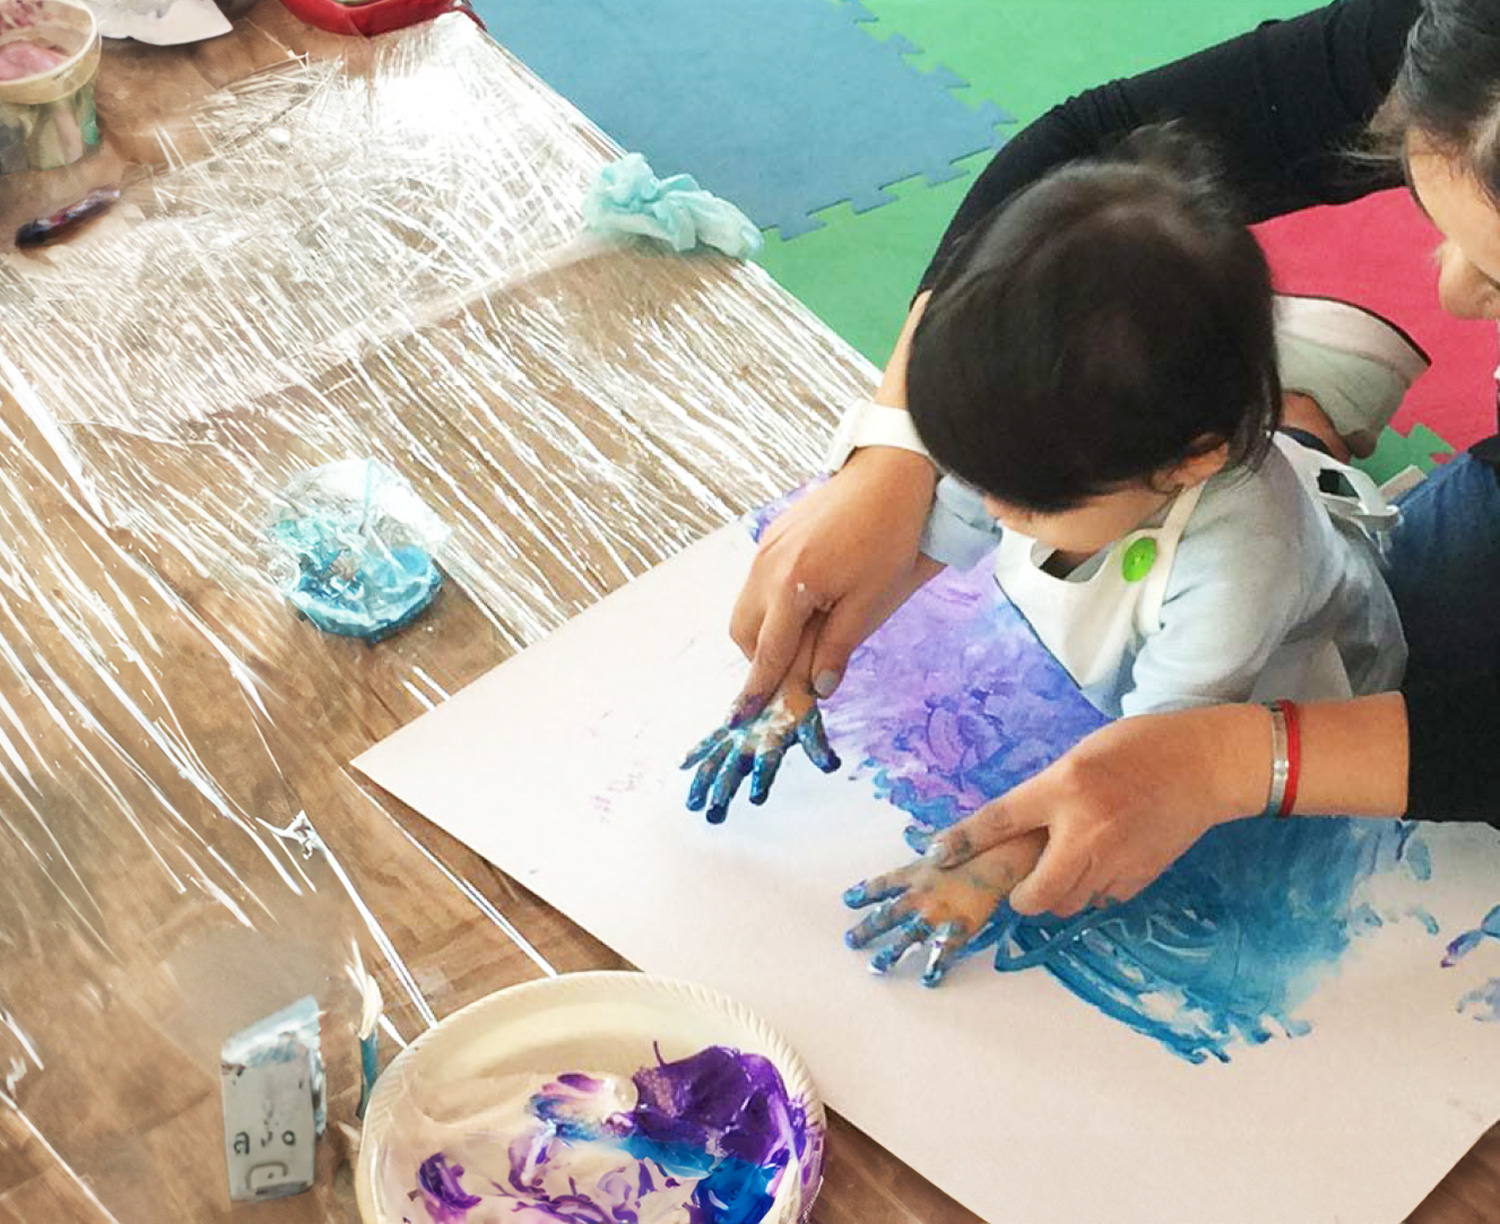 Uma criança pinta com as mãos com tinta azul em um pedaço de papelão.